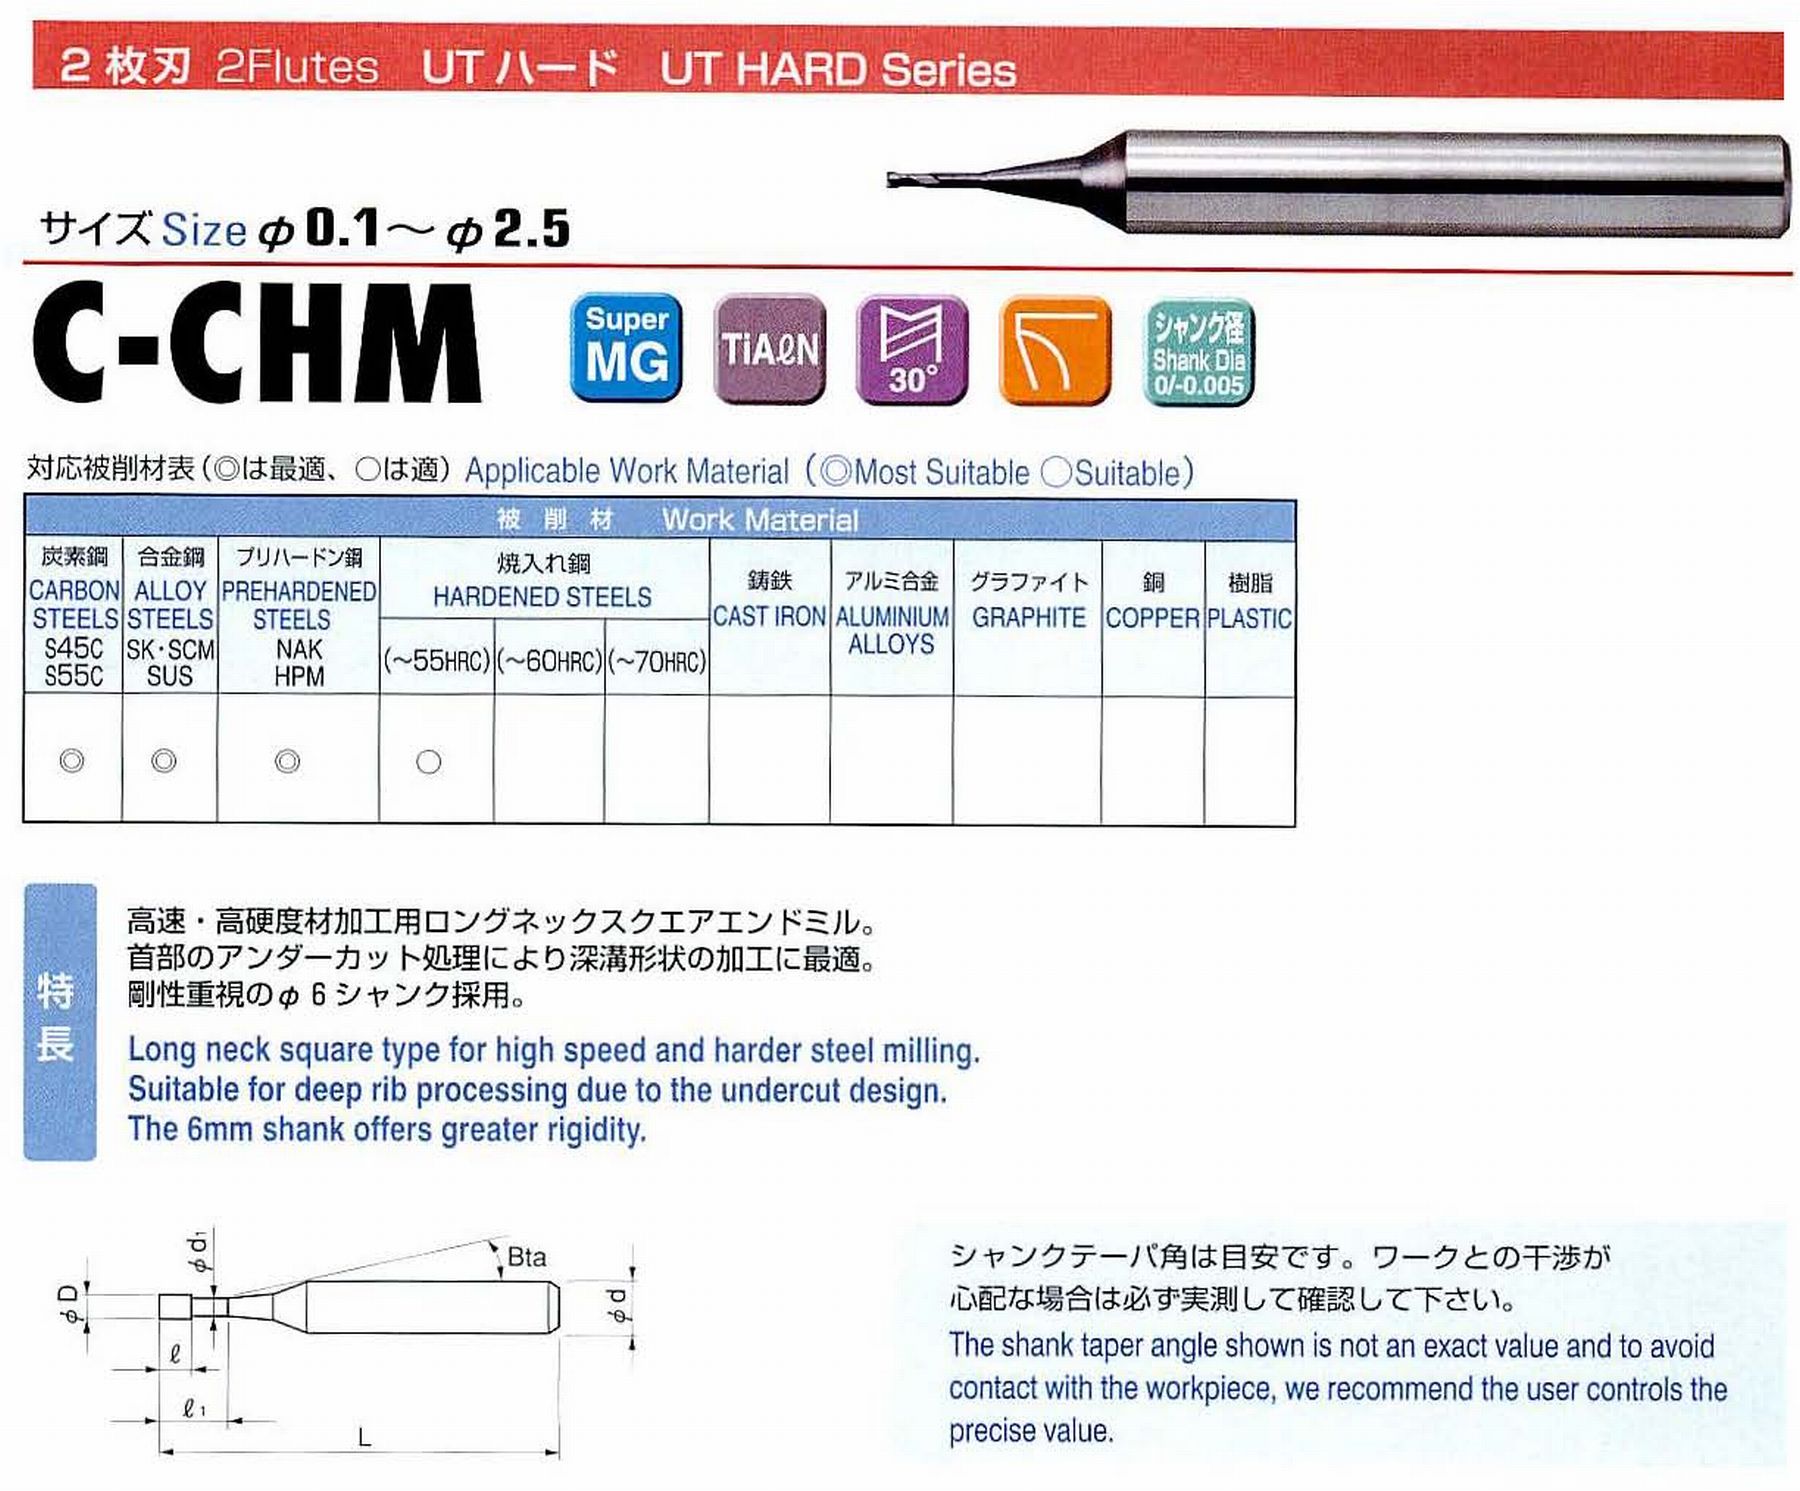 ユニオンツール C-CHM : 値打価格!, welcome to designingmachine.com.